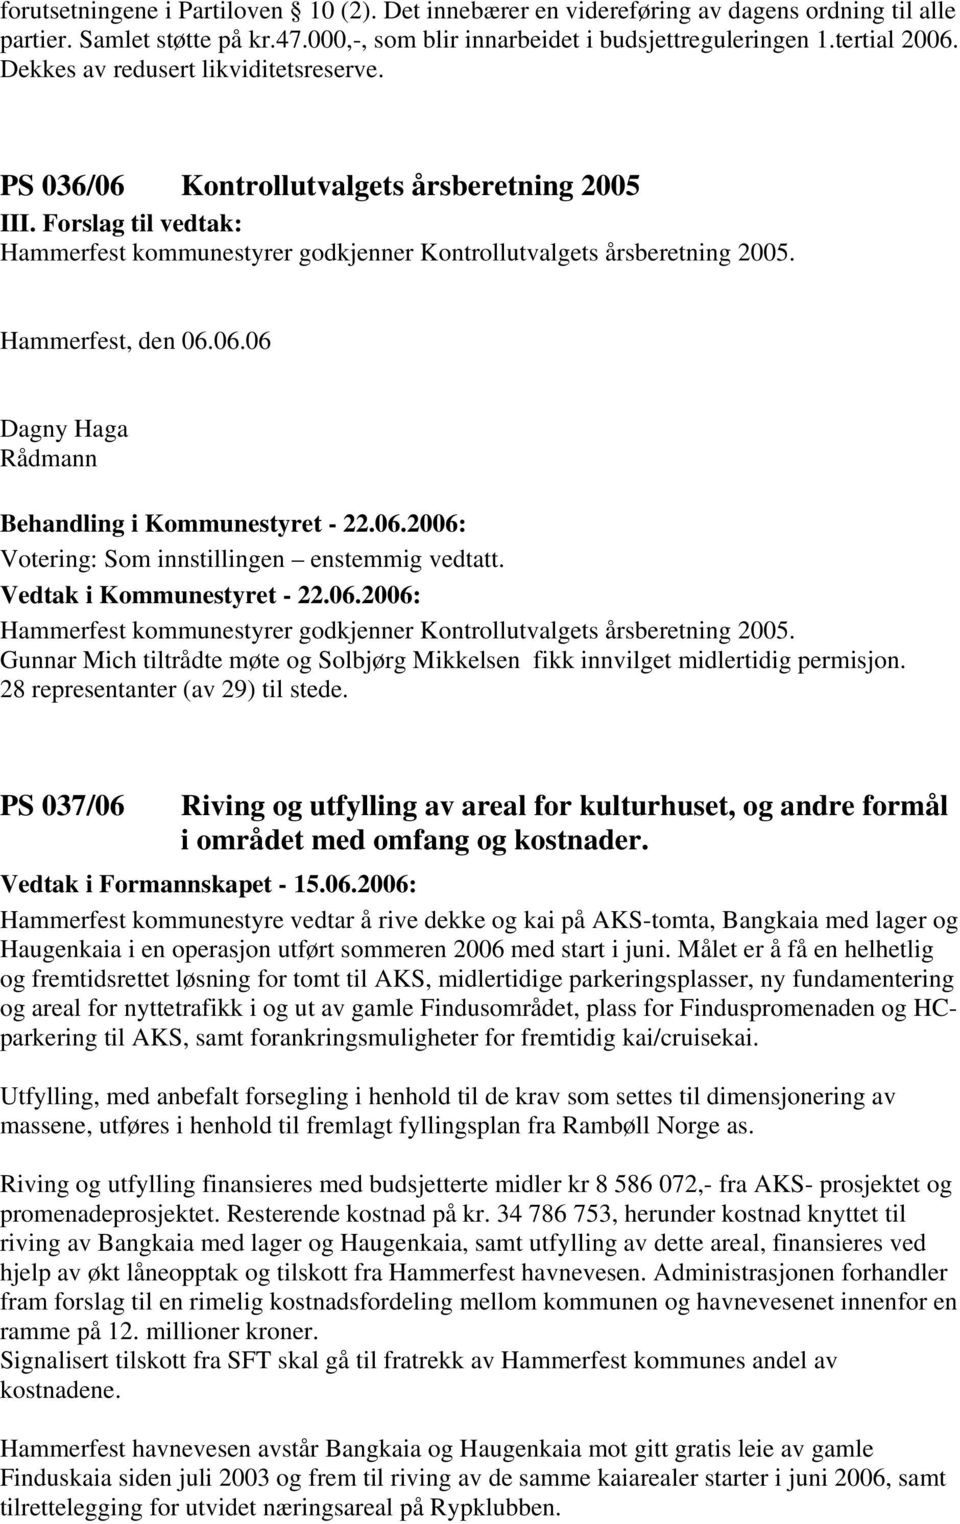 Hammerfest, den 06.06.06 Dagny Haga Rådmann Votering: Som innstillingen enstemmig vedtatt. Hammerfest kommunestyrer godkjenner Kontrollutvalgets årsberetning 2005.